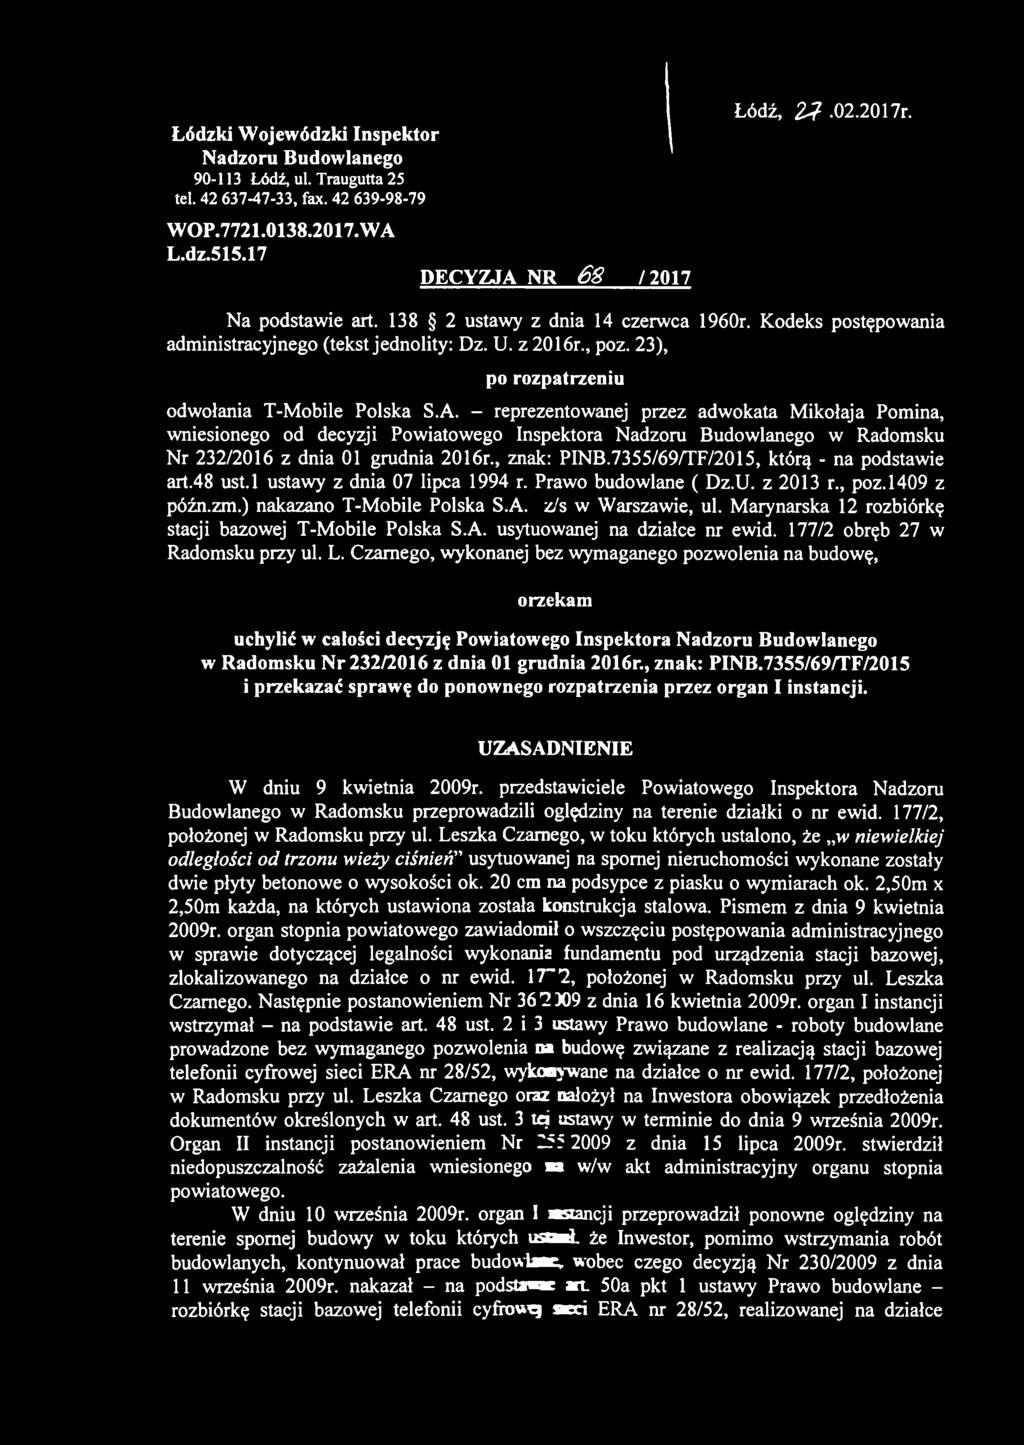 Marynarska 12 rozbiórkę stacji bazowej T-Mobile Polska S.A. usytuowanej na działce nr ewid. 177/2 obręb 27 w Radomsku przy ul. L.